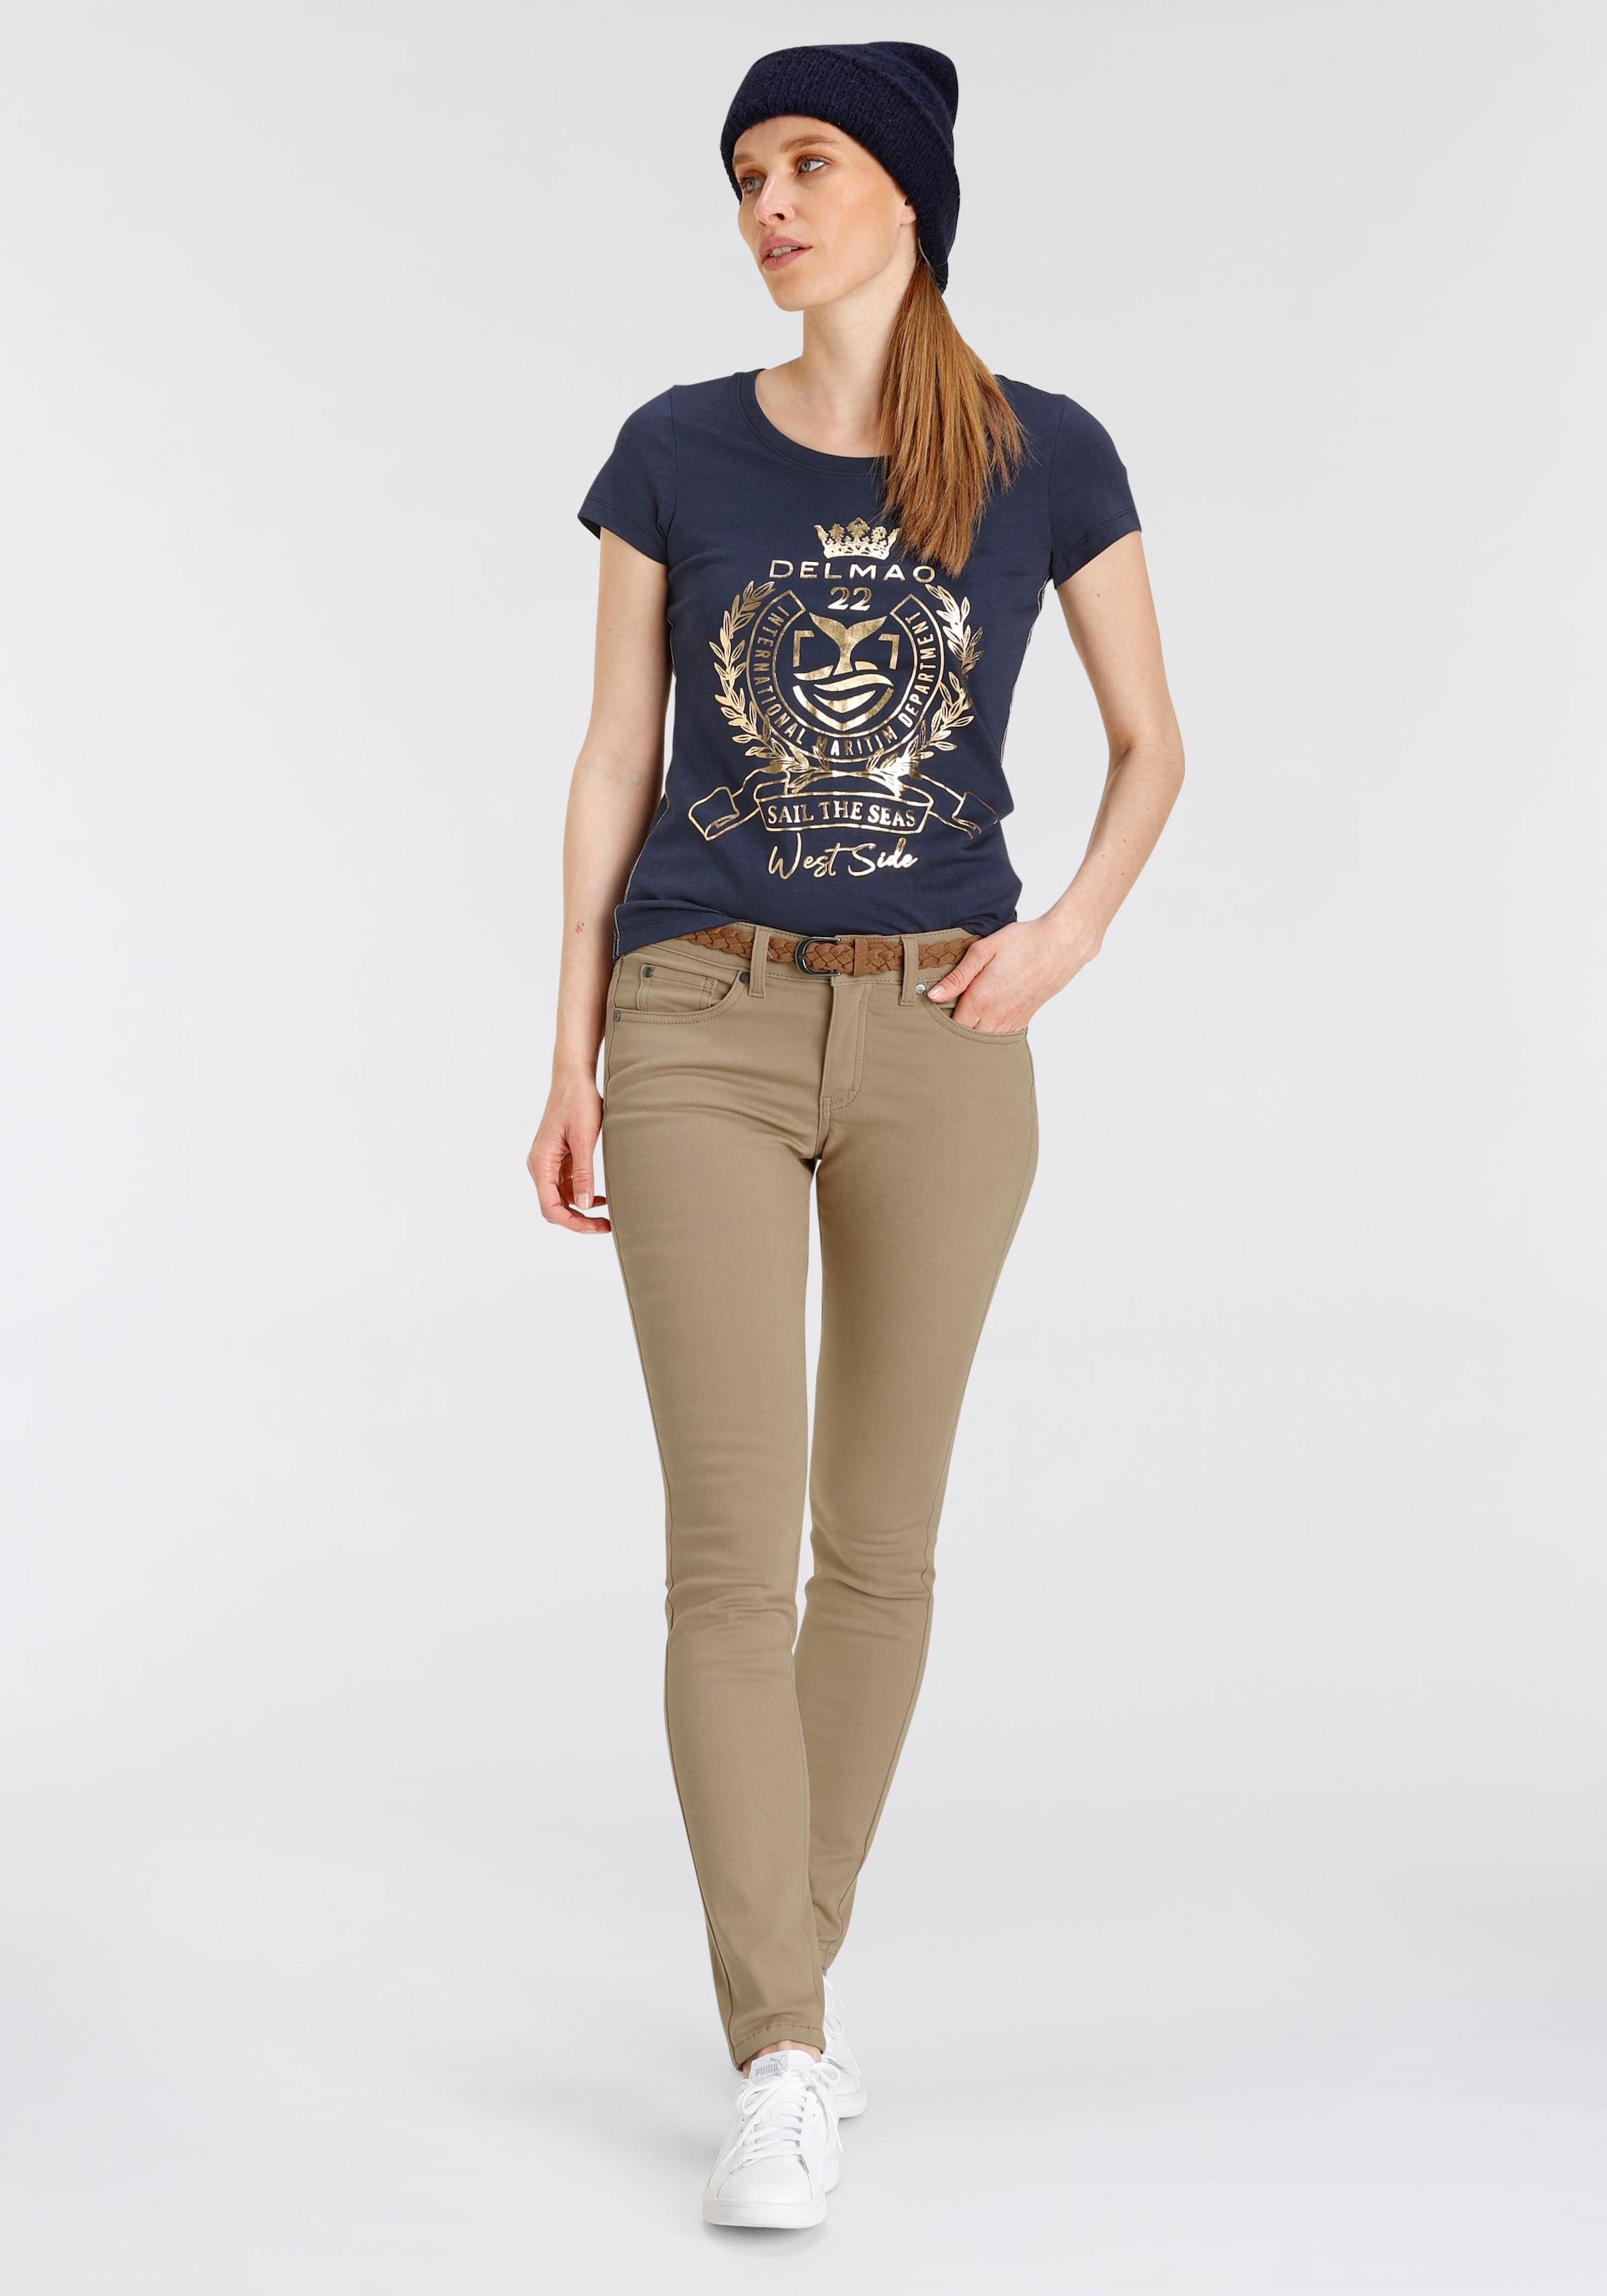 goldfarbenem T-Shirt, MARKE! DELMAO NEUE mit hochwertigem, auf Folienprint ♕ - versandkostenfrei